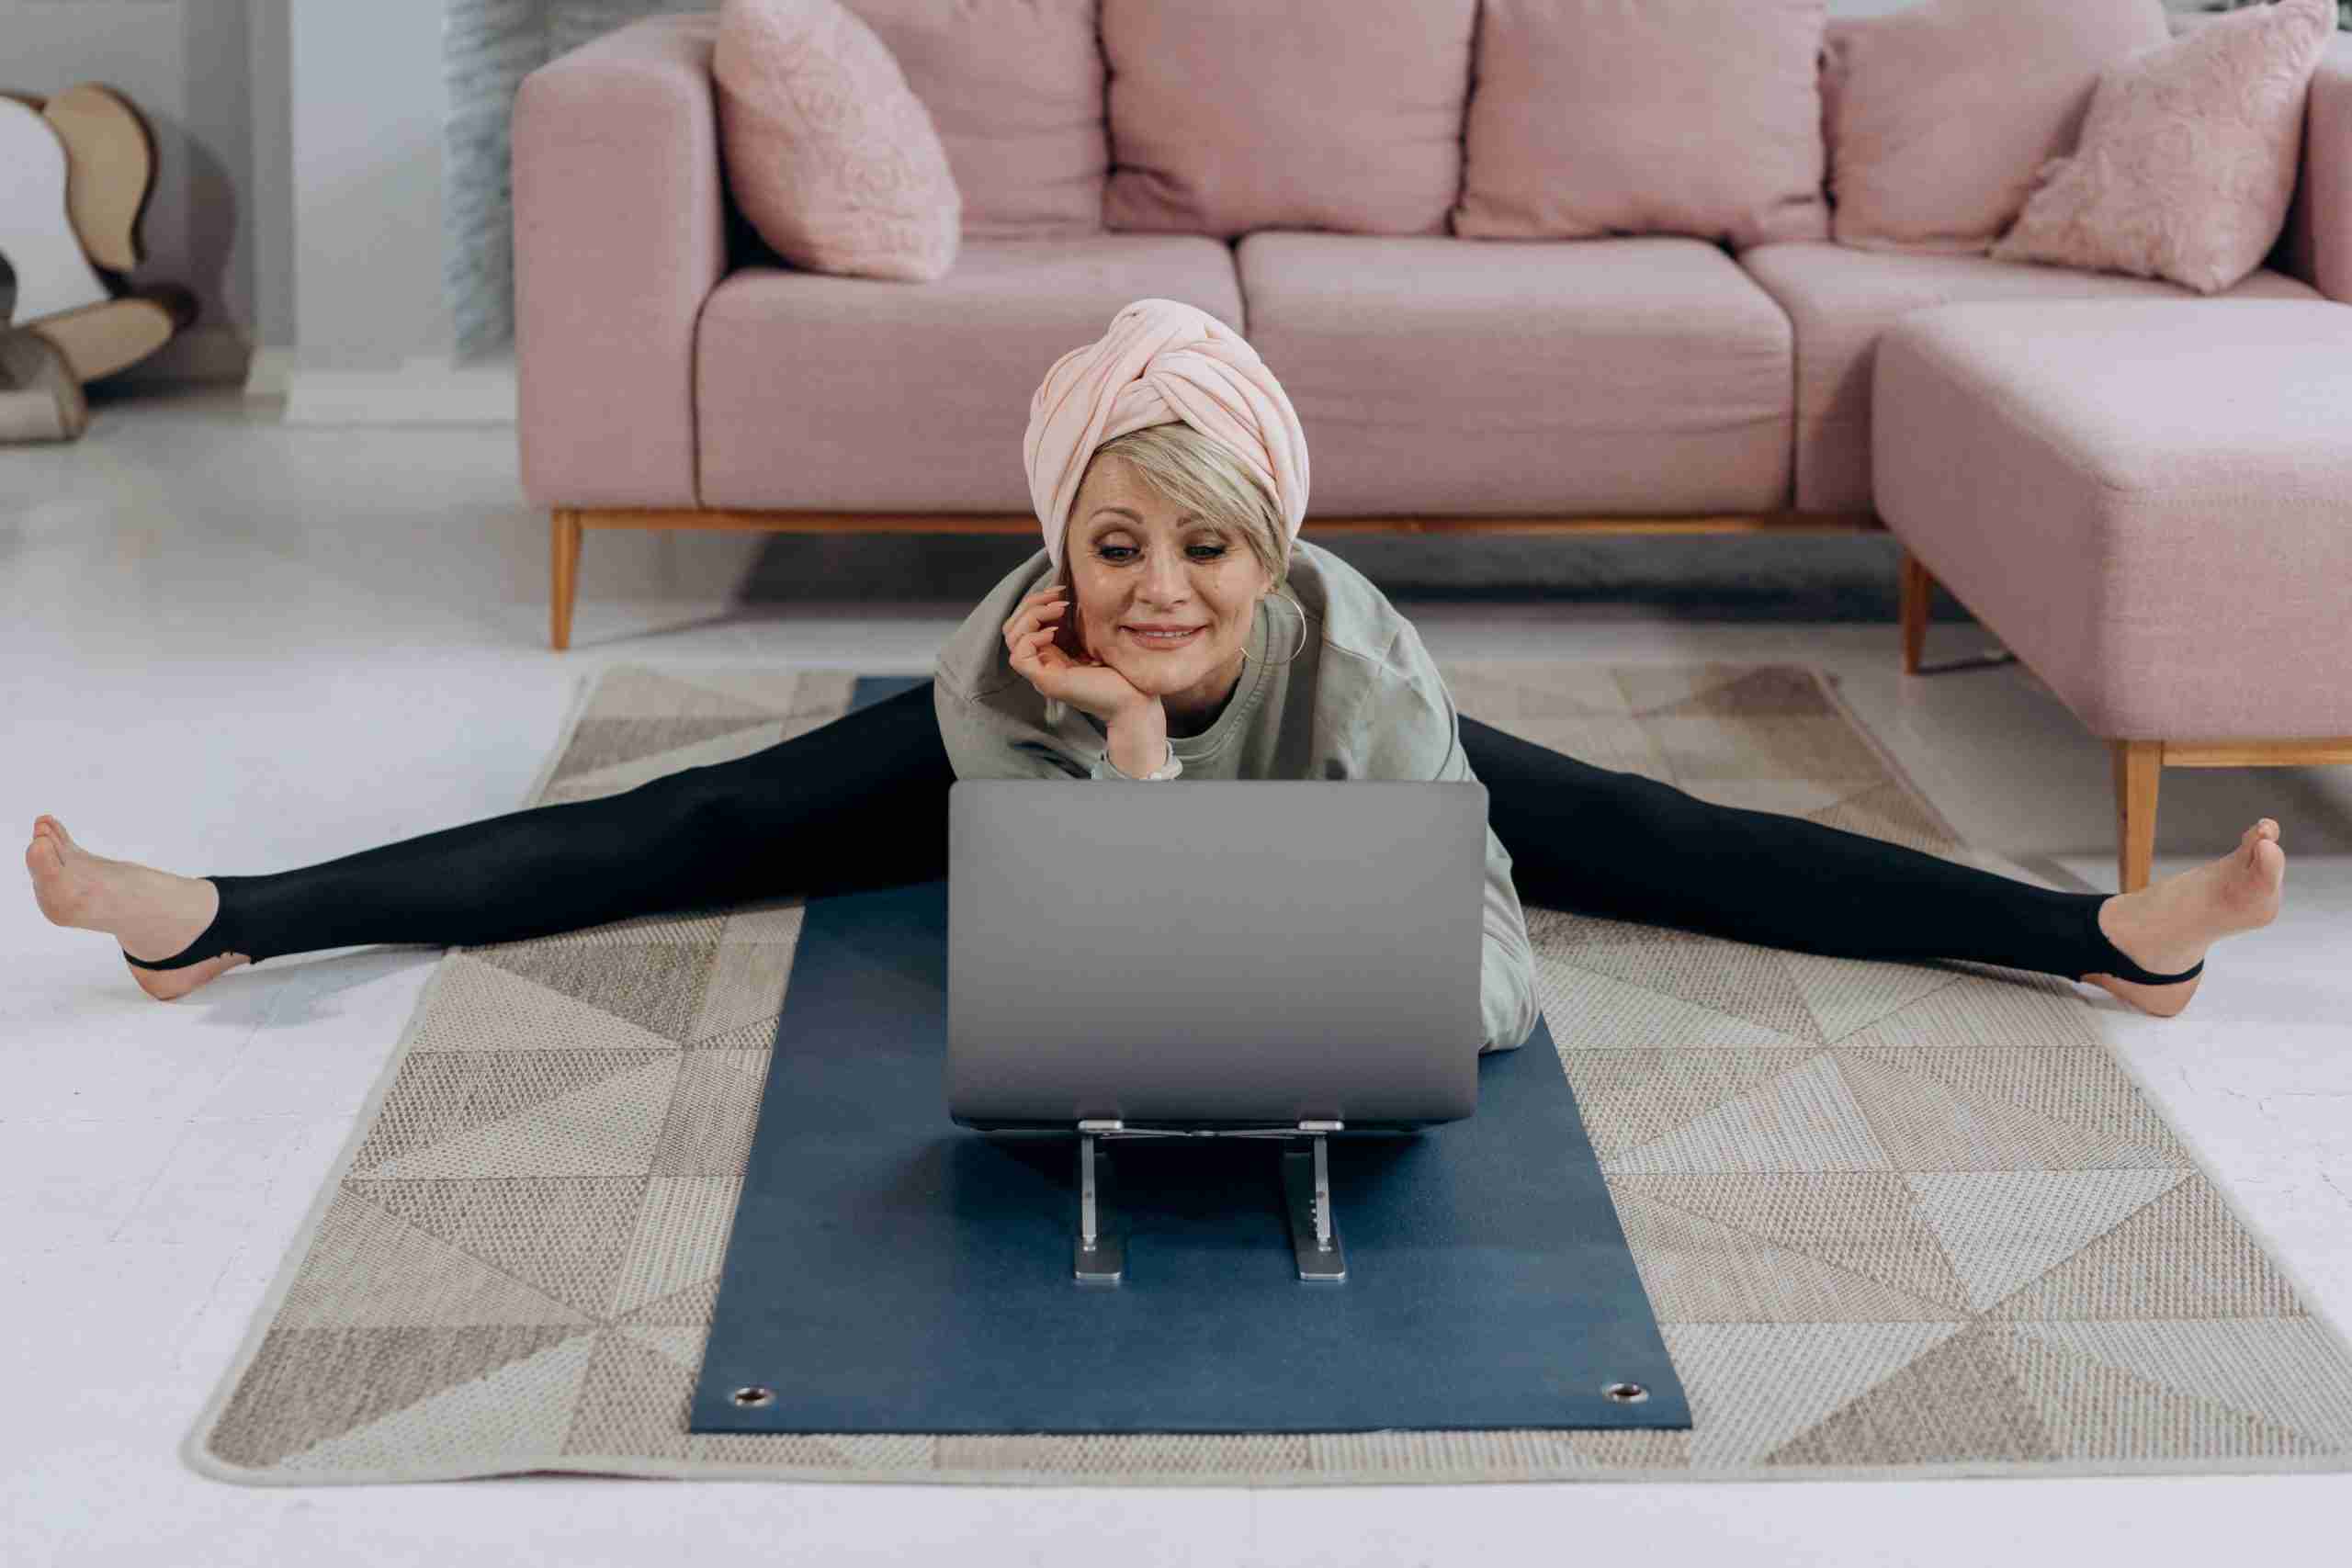 senhora idosa a esticar-se em frente a um computador portátil num tapete; o desporto é bom em qualquer idade saúde bem-estar before-night-falls.com blogue
